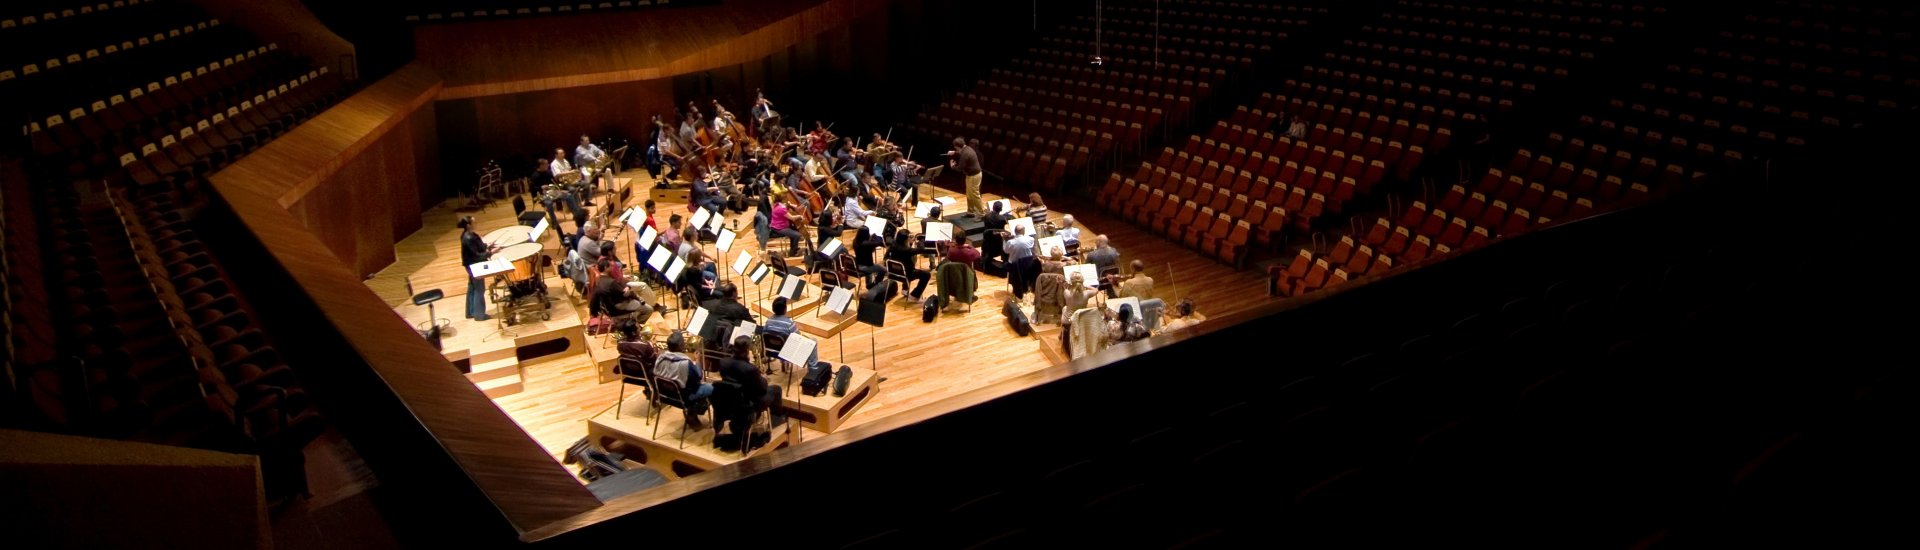 Een orkest oefent in een lege zaal.